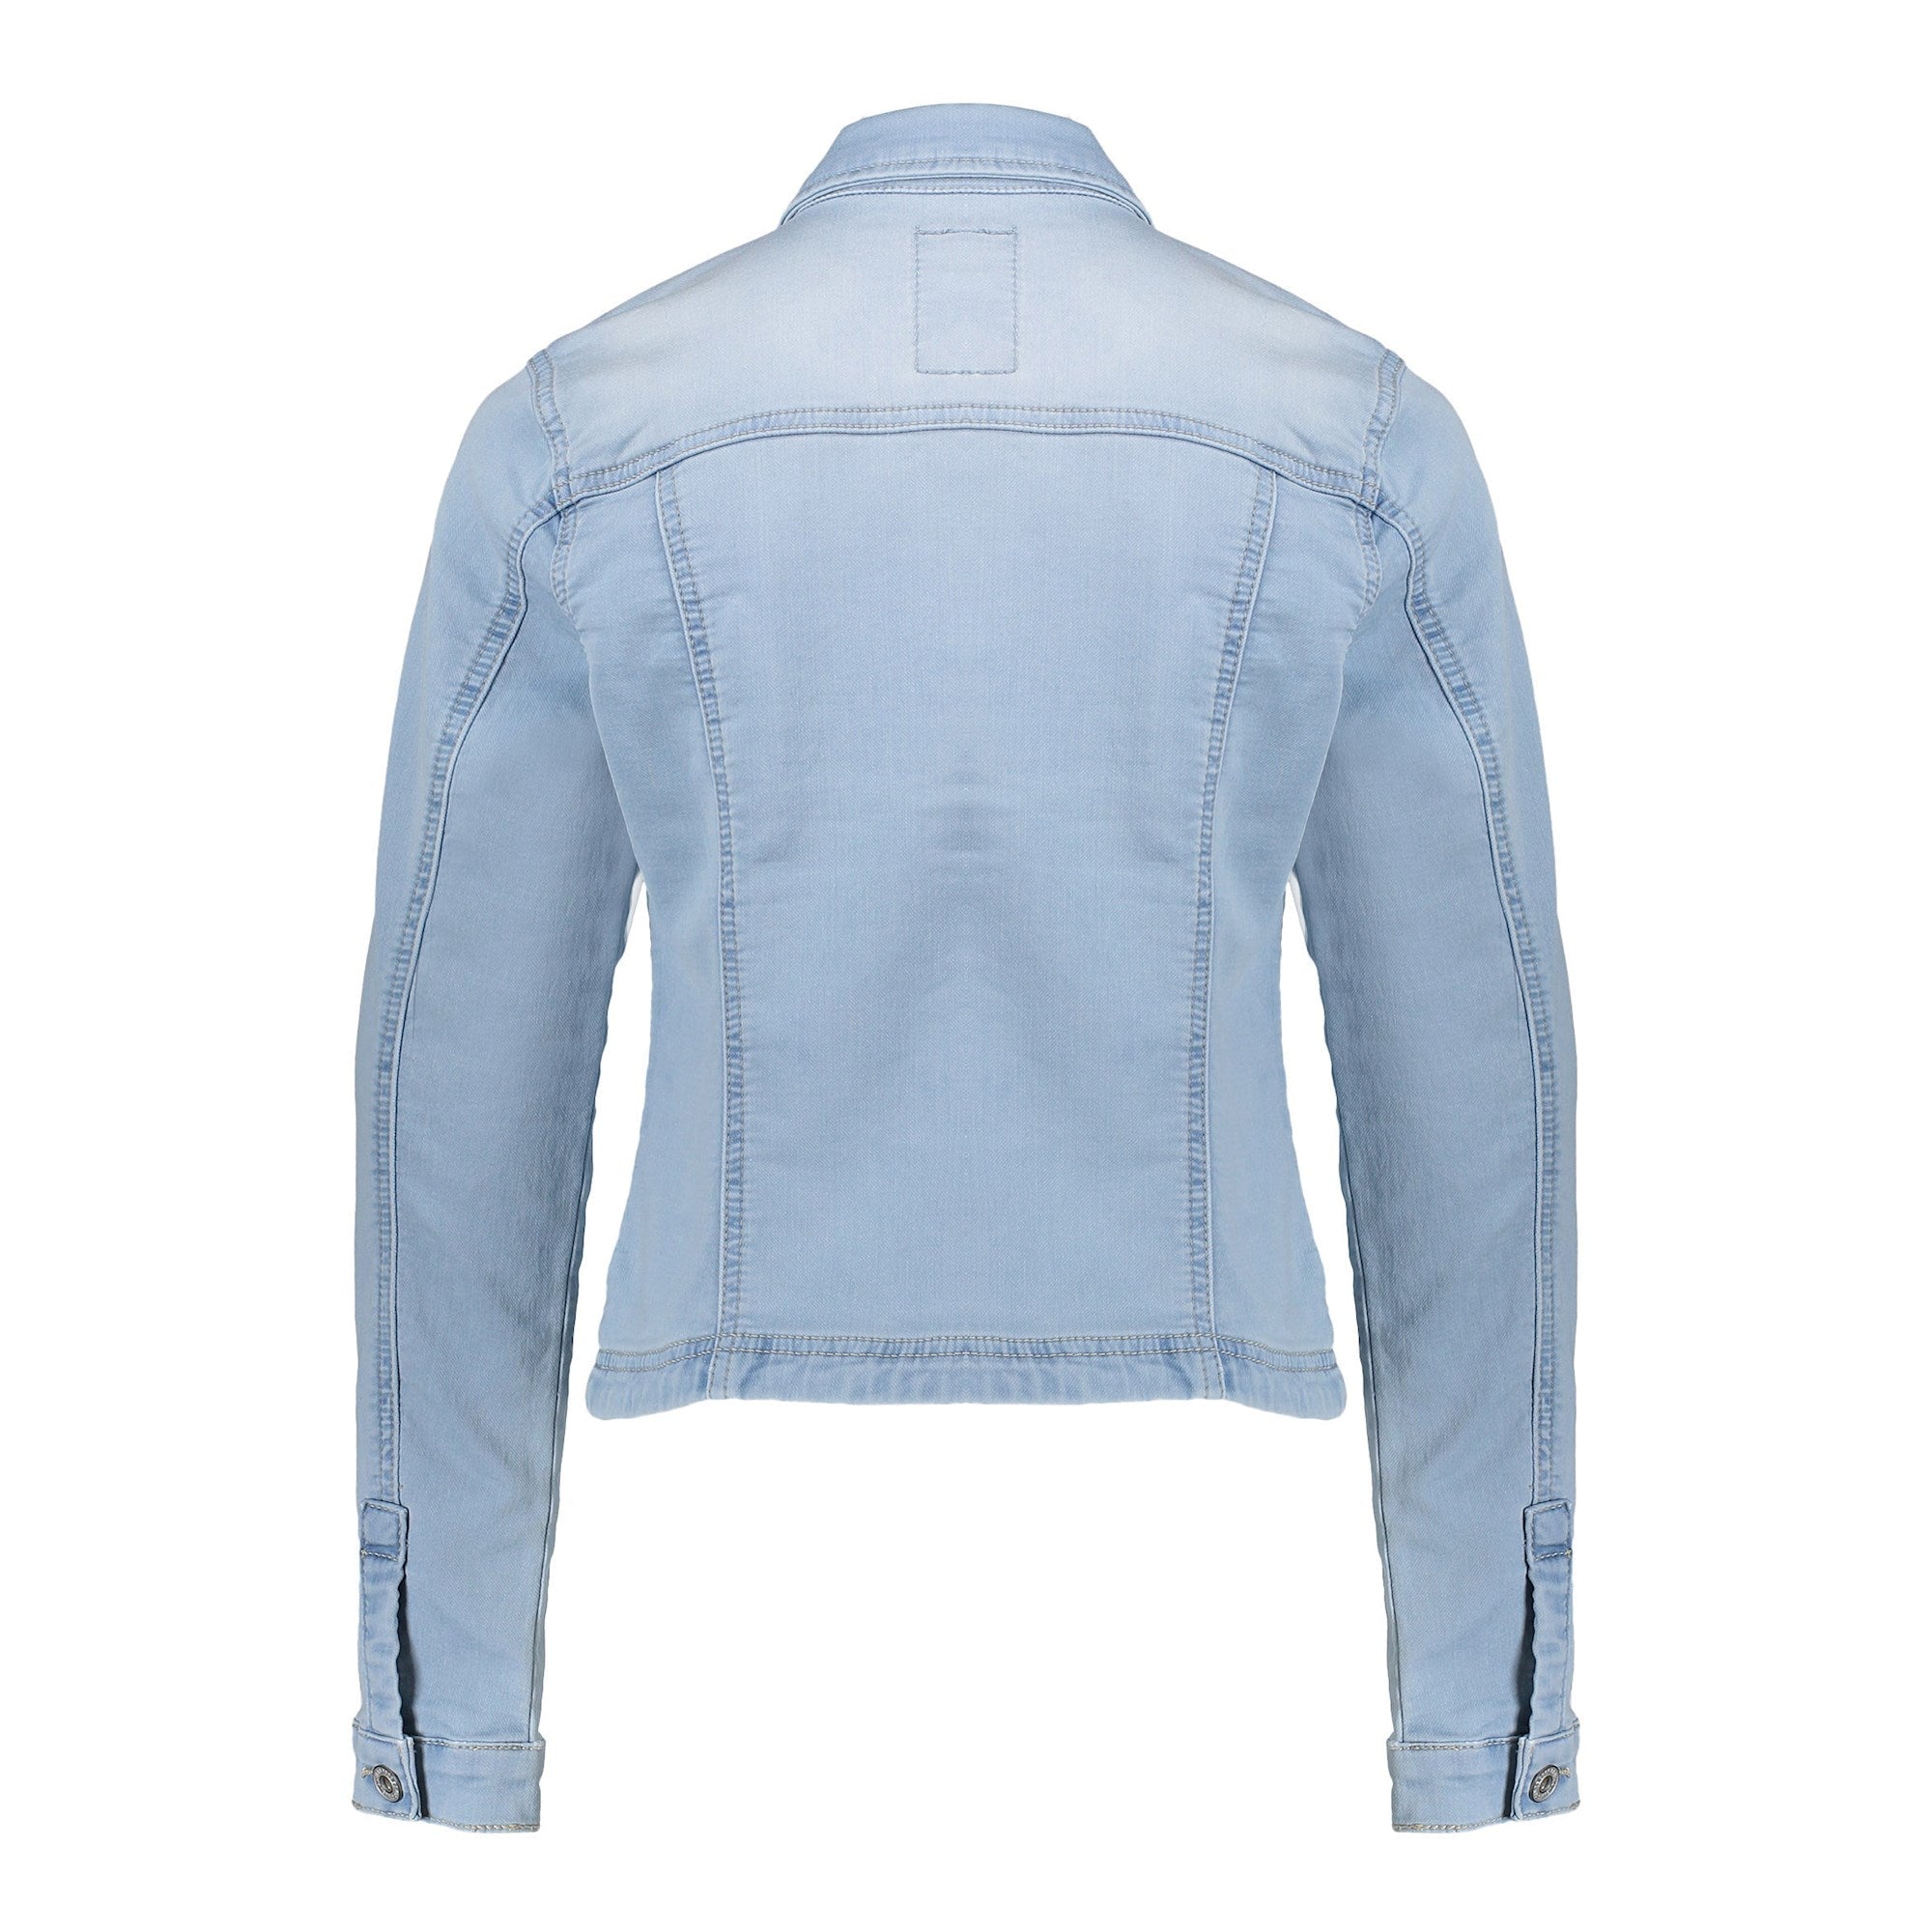 Meisjes Jeans jacket jogg denim van Geisha in de kleur 000830 - bleached denim in maat 176.